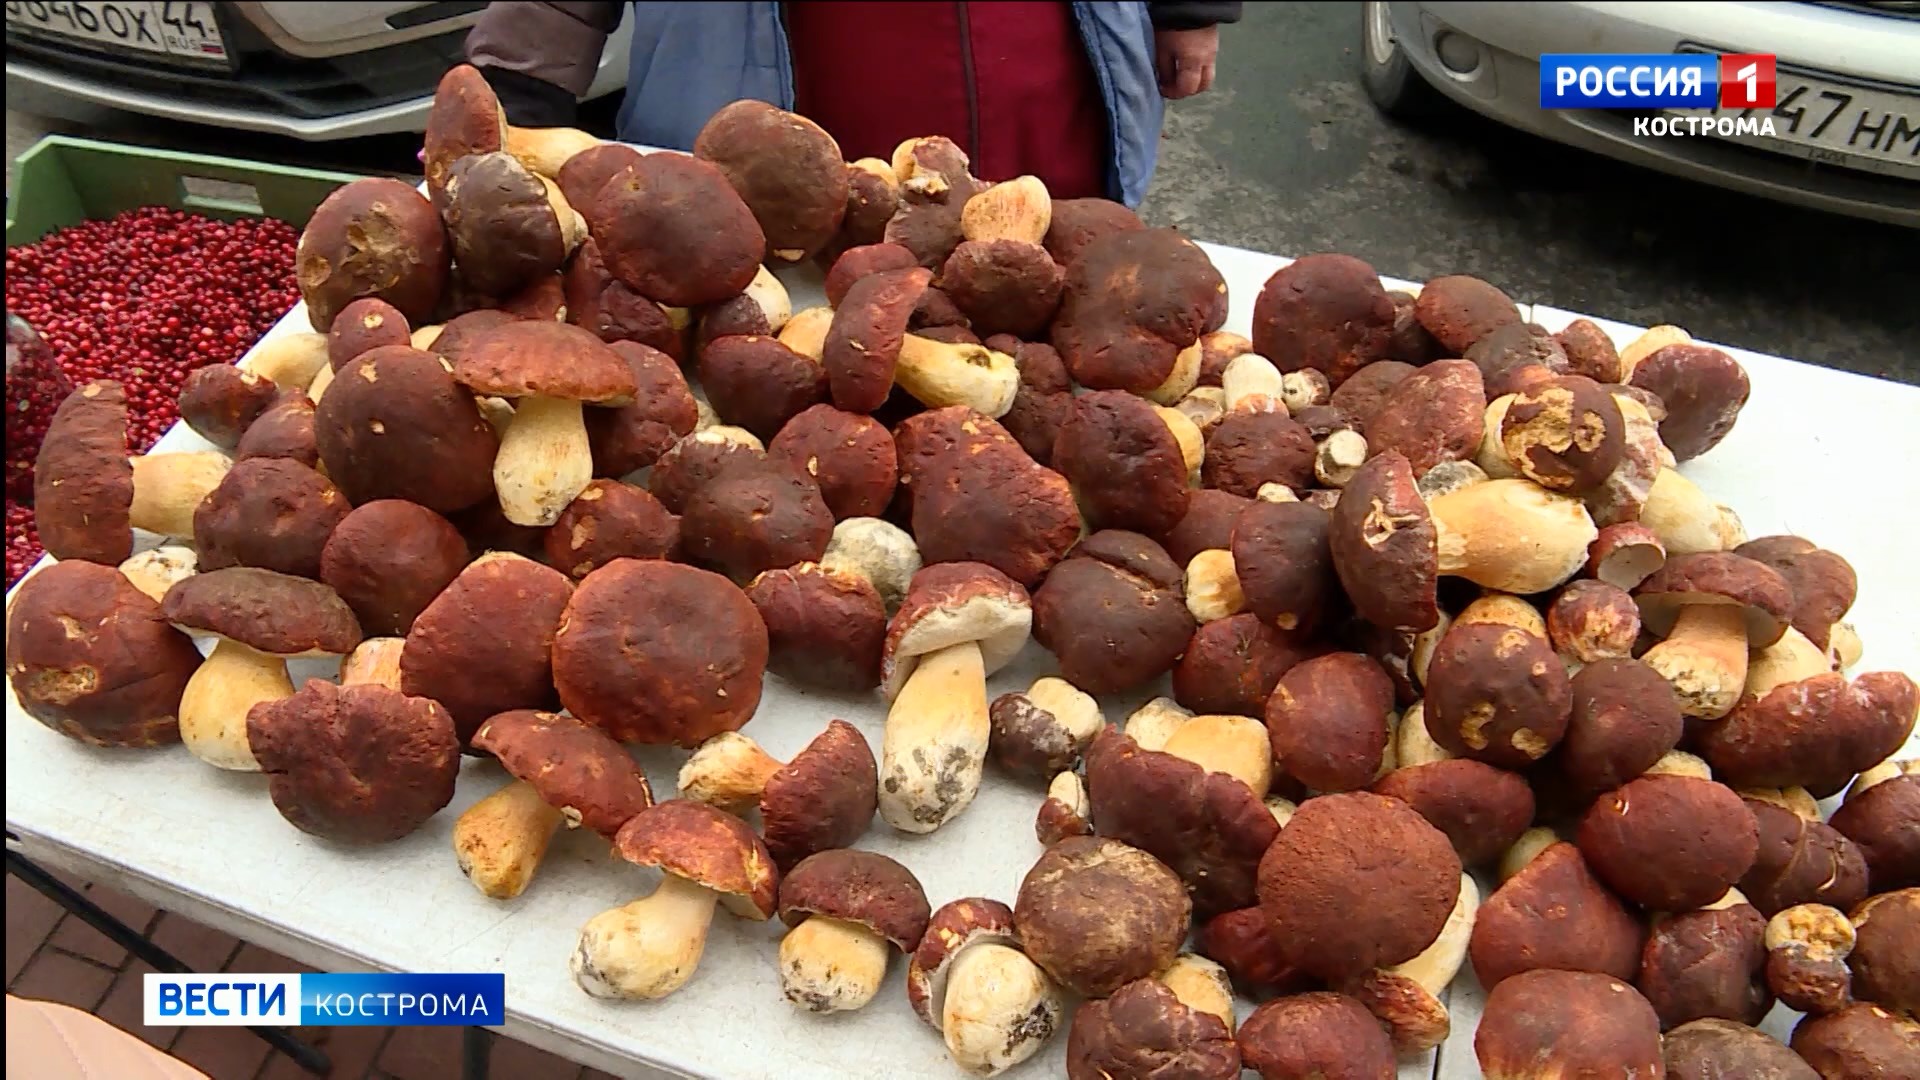 Белые грибы на прилавках в Костроме обогнали по цене говяжьи стейки